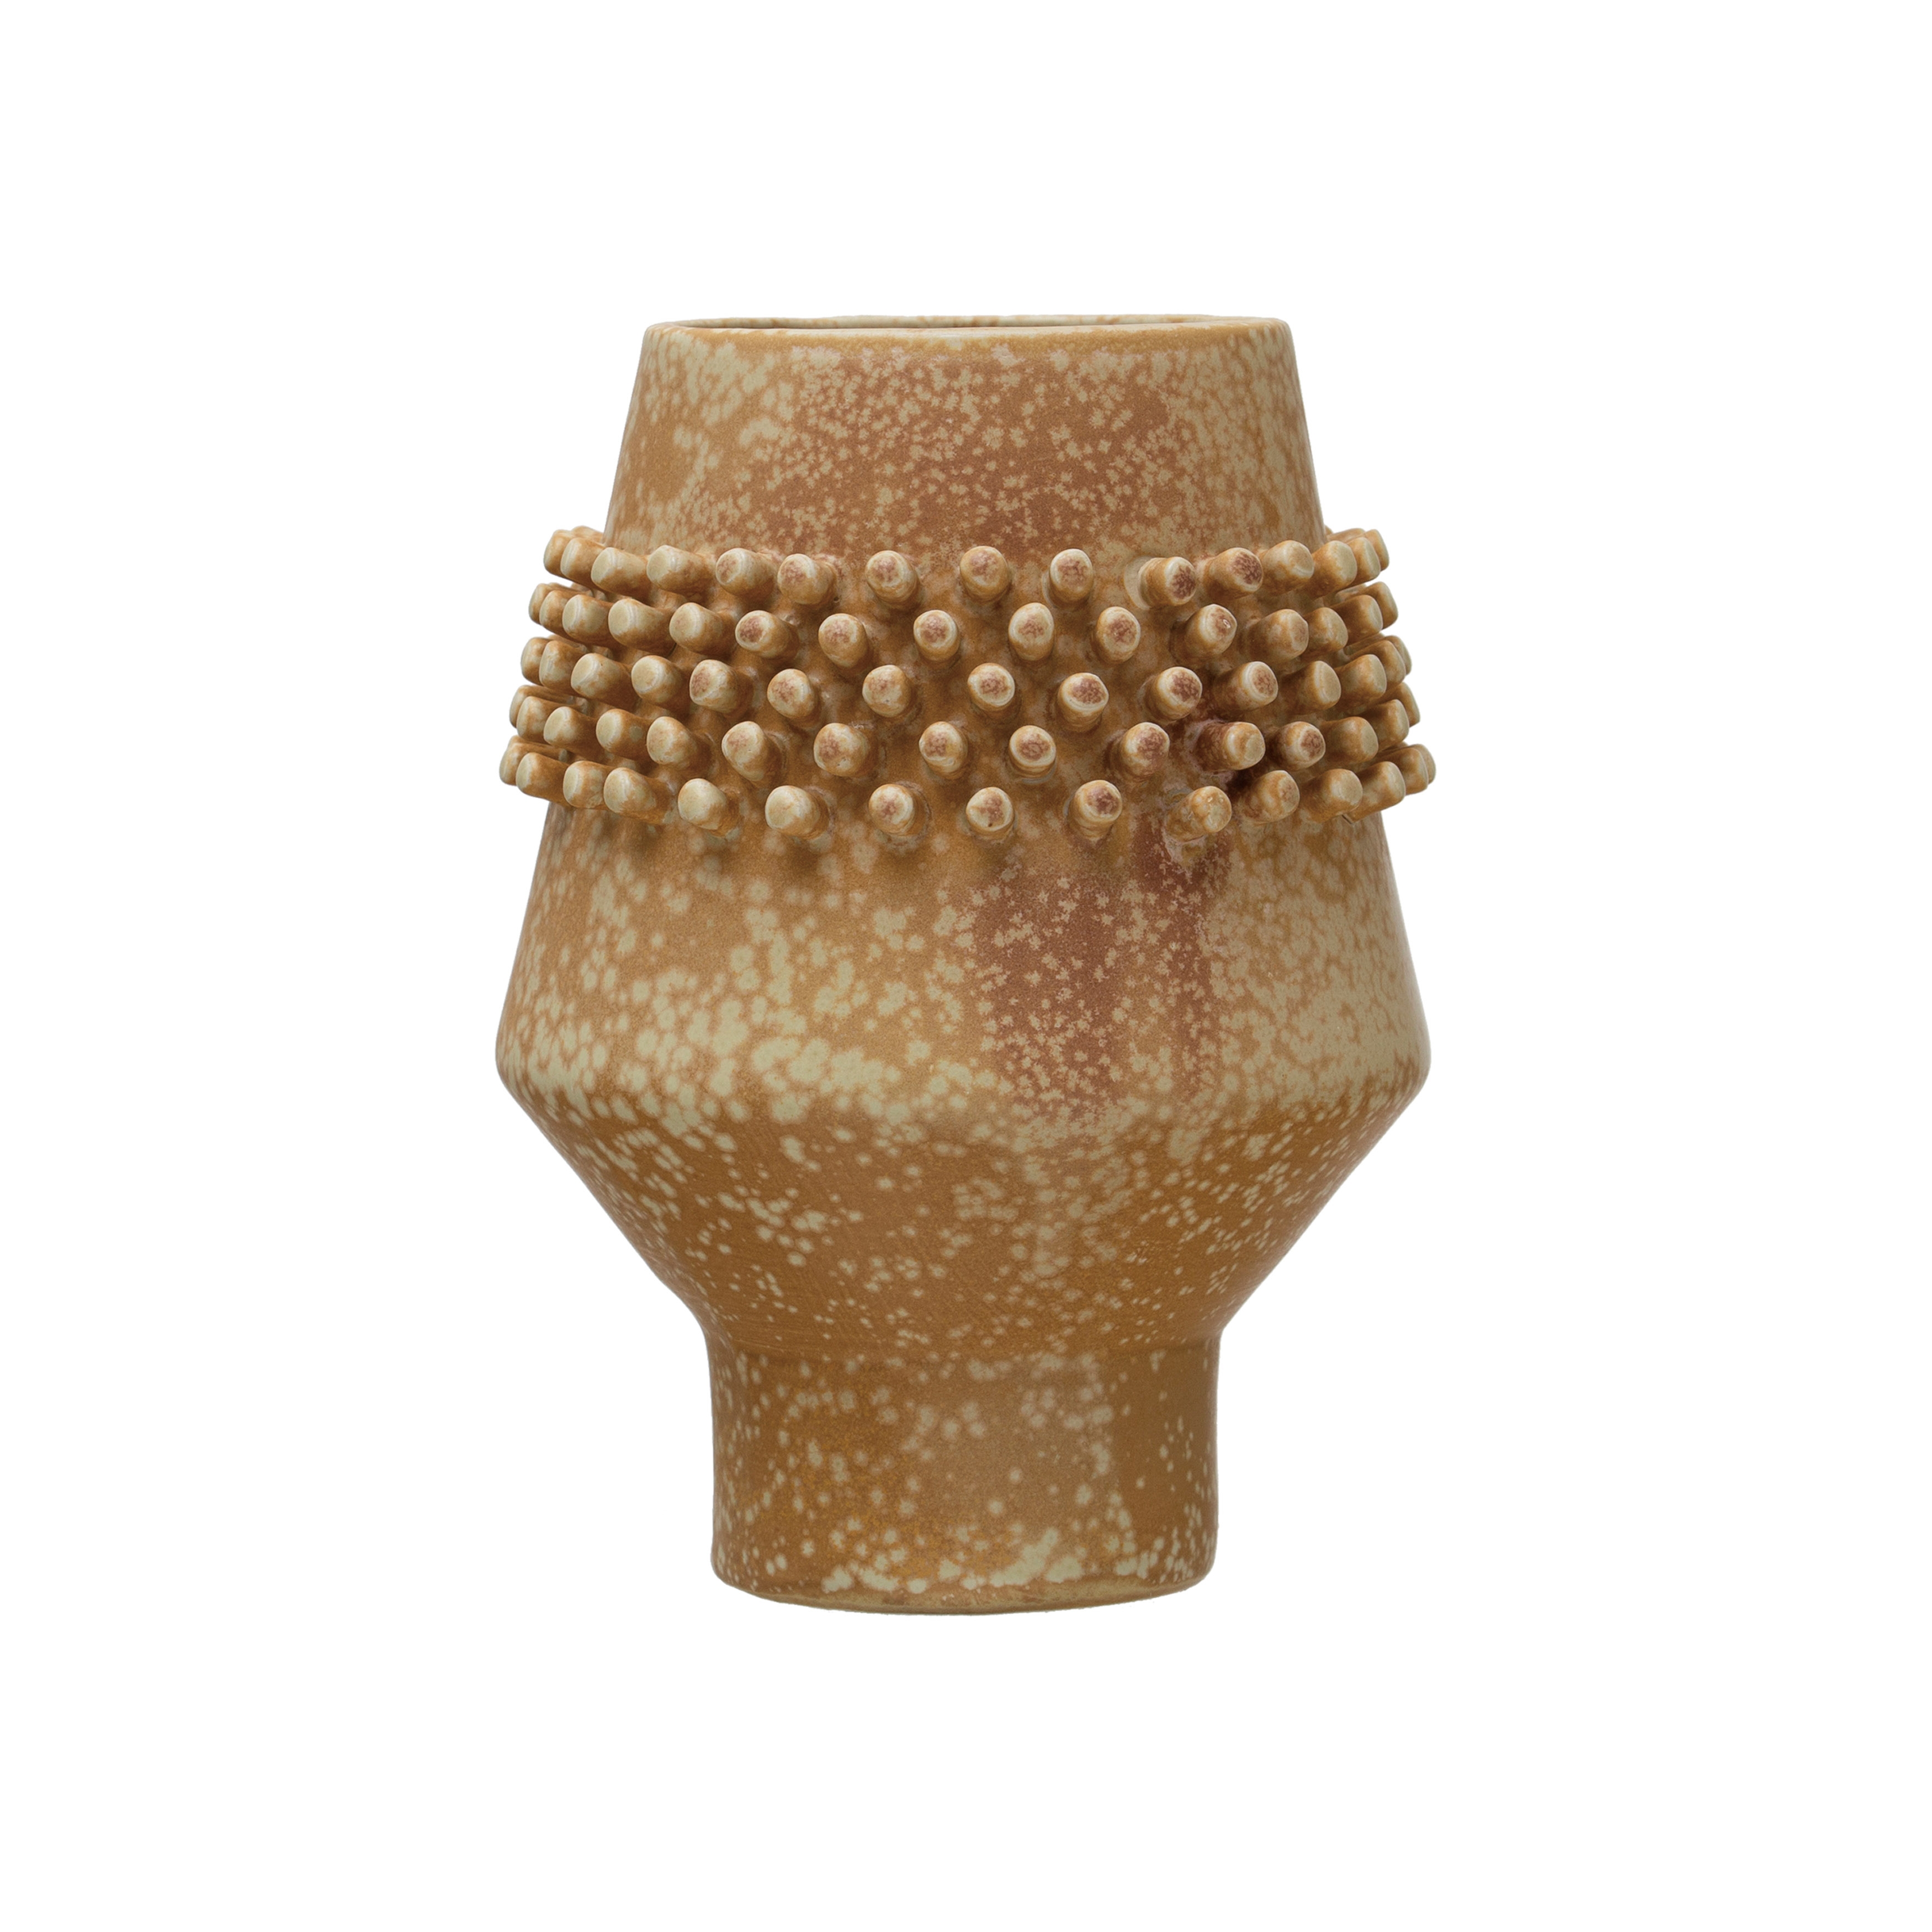  Stoneware Vase with Raised Dots, Terracotta Reactive Glaze - Image 0